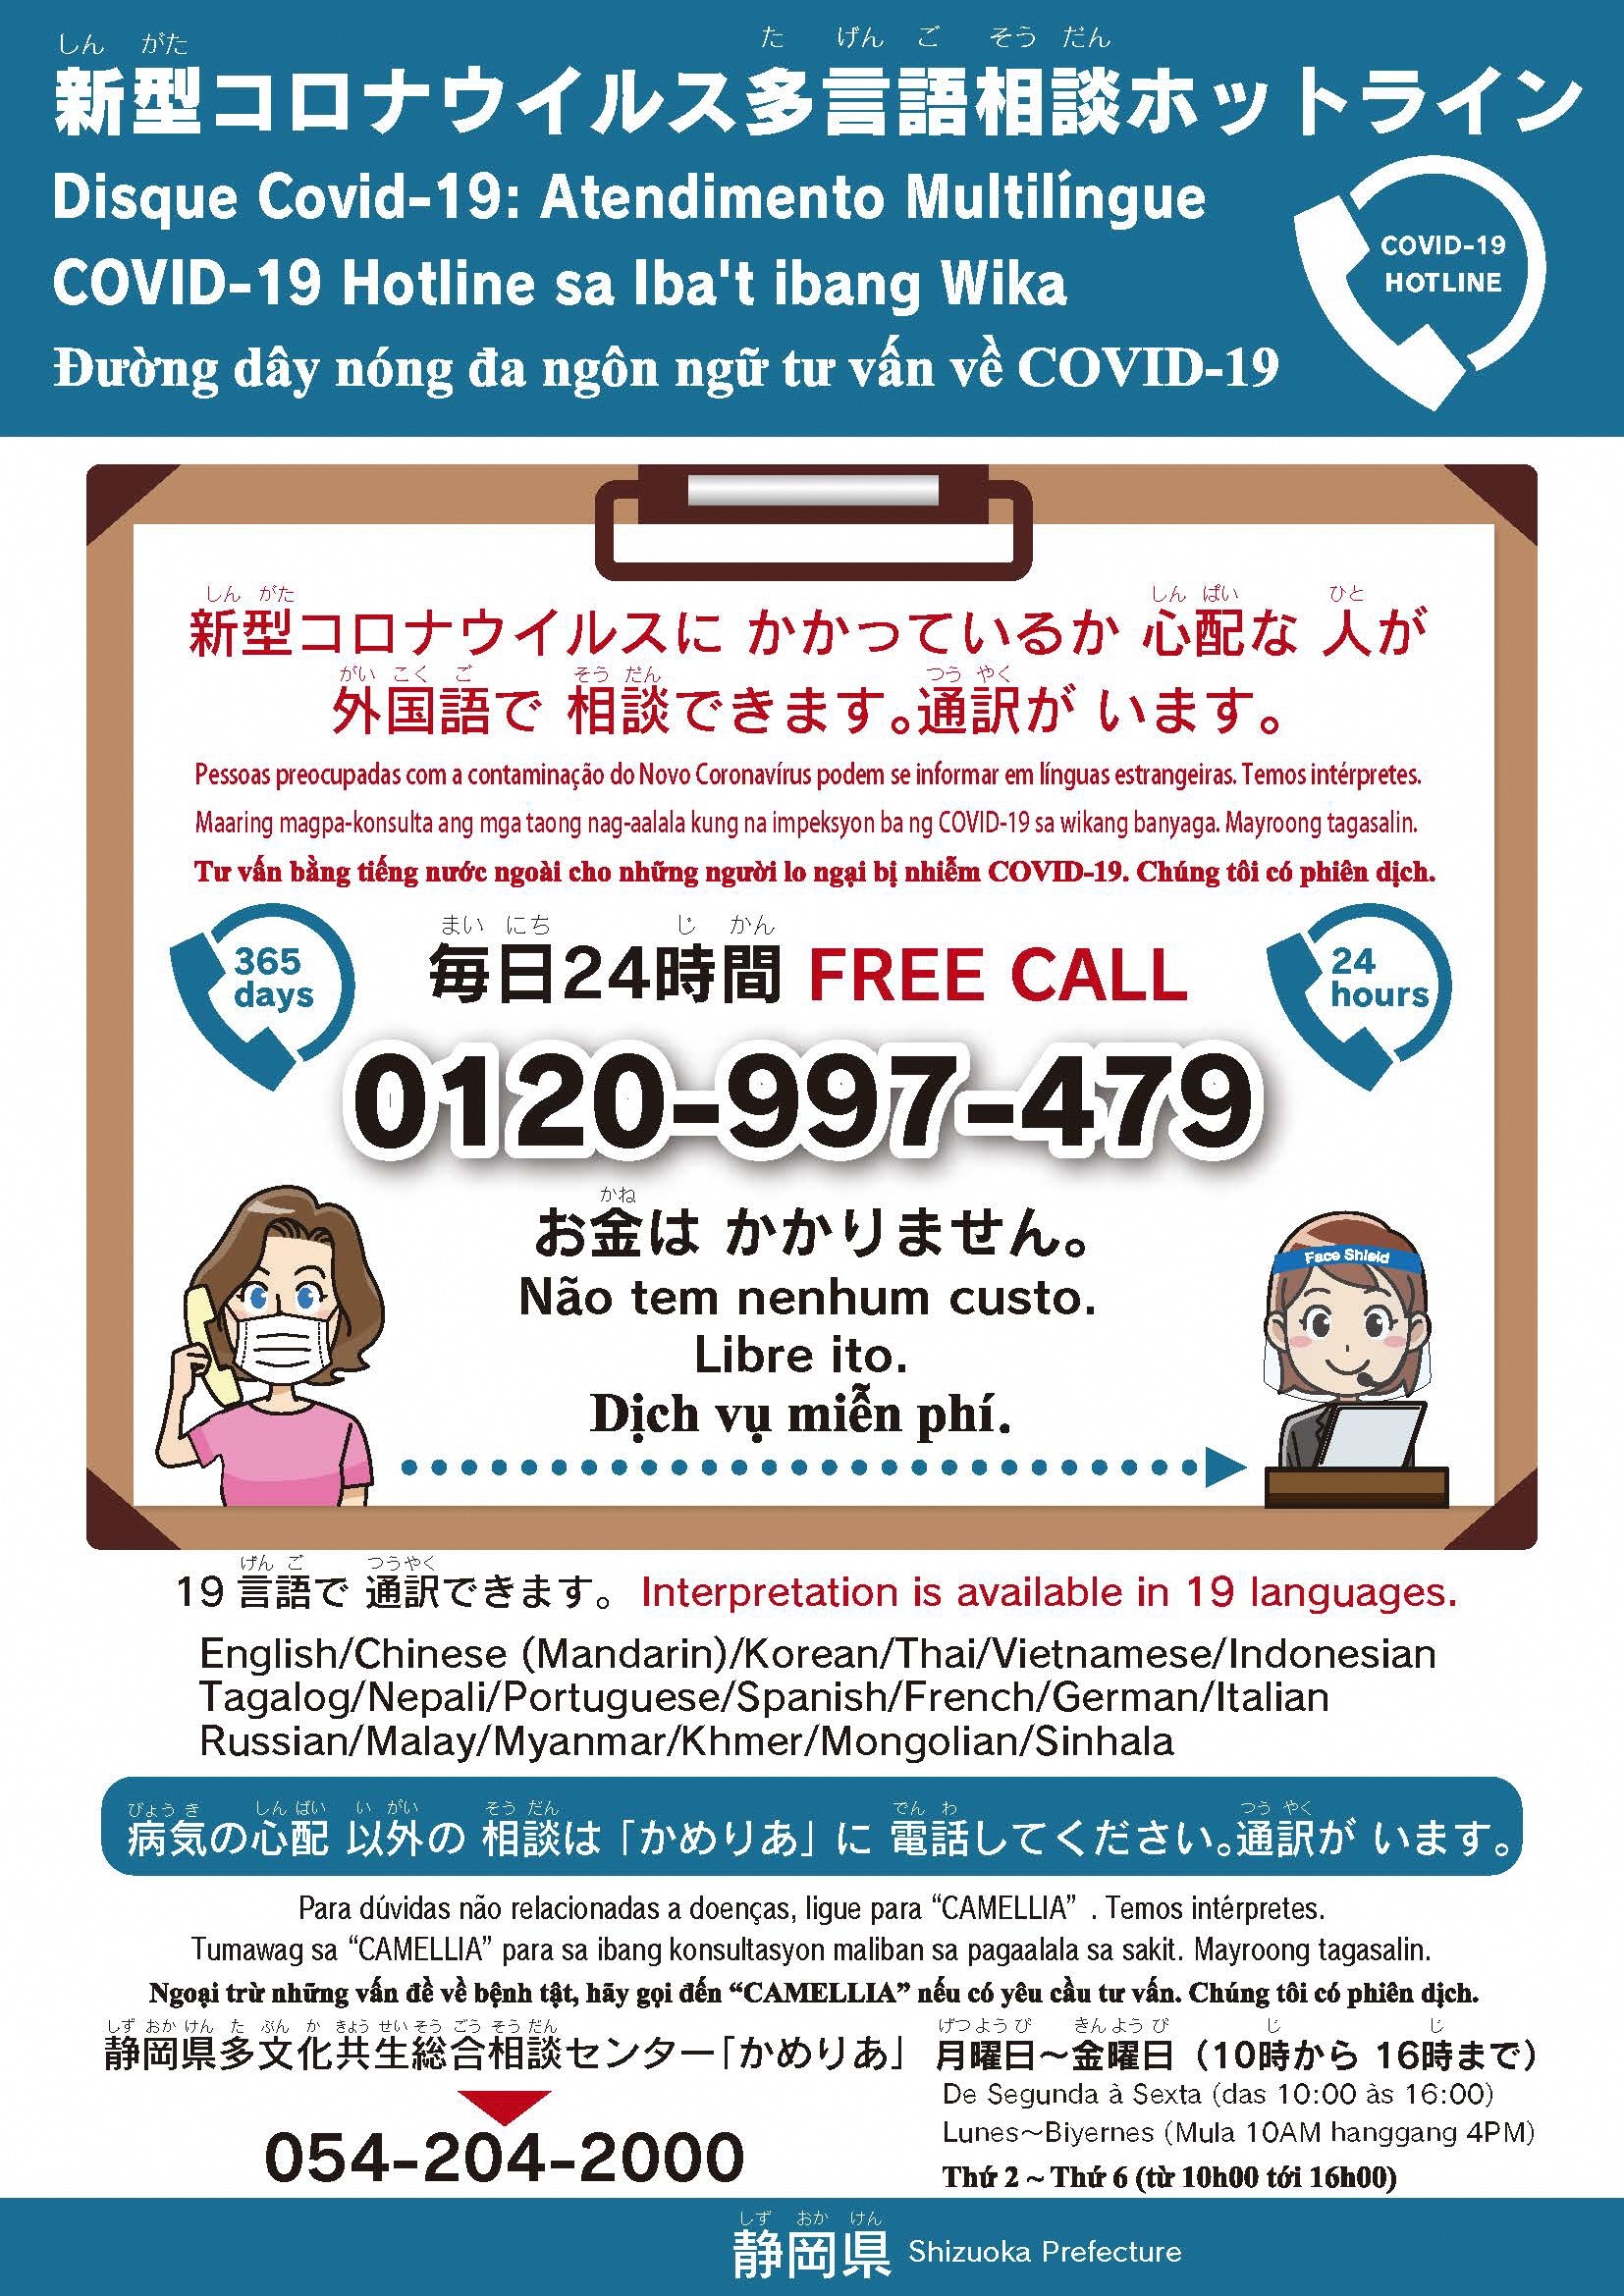 「新型コロナウイルス多言語相談ホットライン」のポスター。新型コロナウイルスにかかっているか、心配な人が外国語で相談できます。通訳がいます。毎日24時間フリーダイヤル0120-997-479。お金はかかりません。19言語で通訳できます。病気の心配以外の相談は、「かめりあ」に相談してください。通訳がいます。静岡県多文化共生総合センター「かめりあ」電話番号054-204-2000、毎週月曜日から金曜日の午前10時から午後4時まで